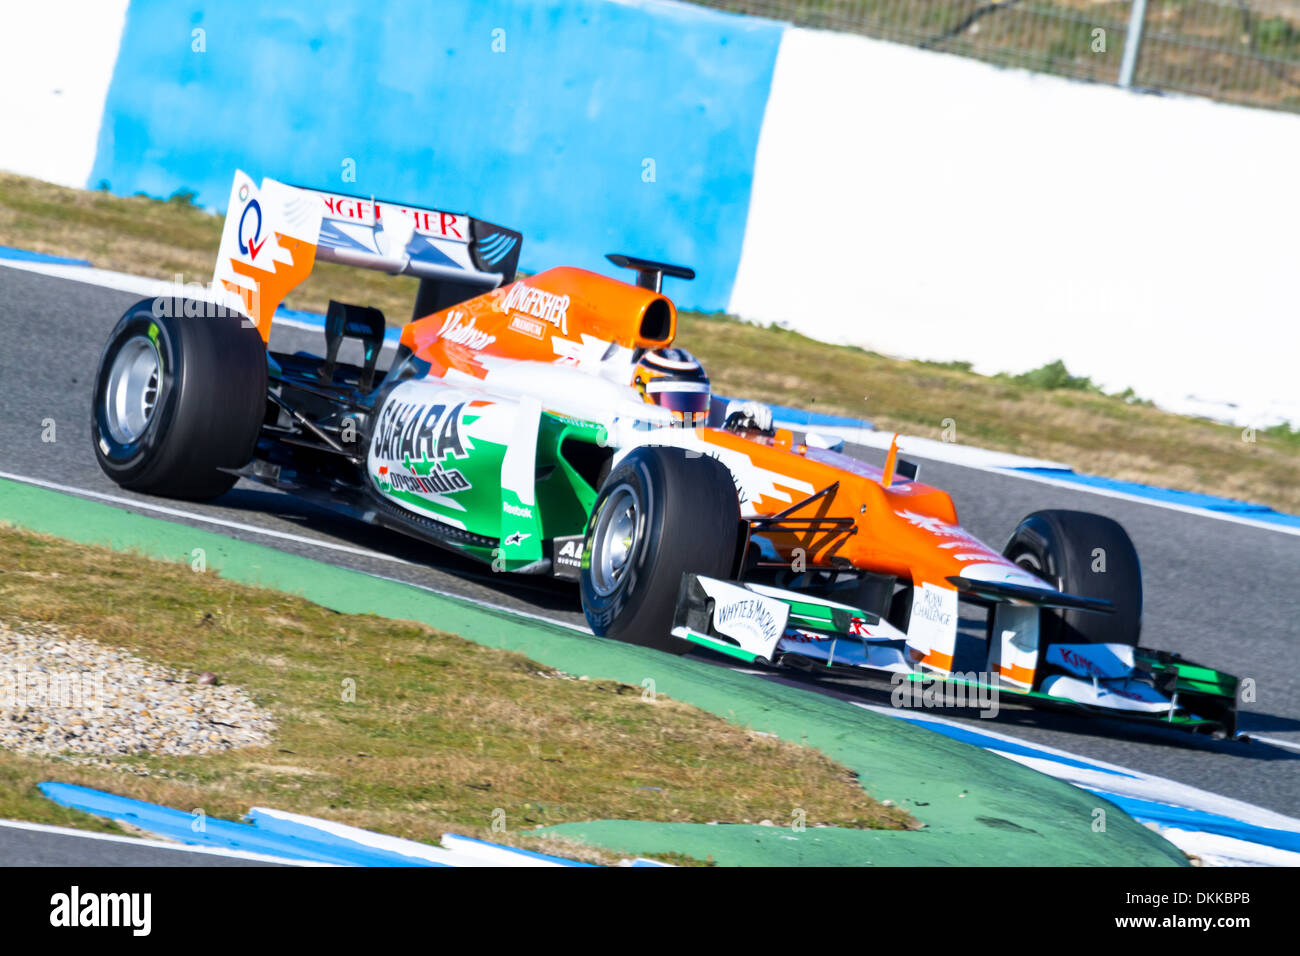 Nico Hülkenberg de carreras de F1 Force India en sesiones de formación Foto de stock